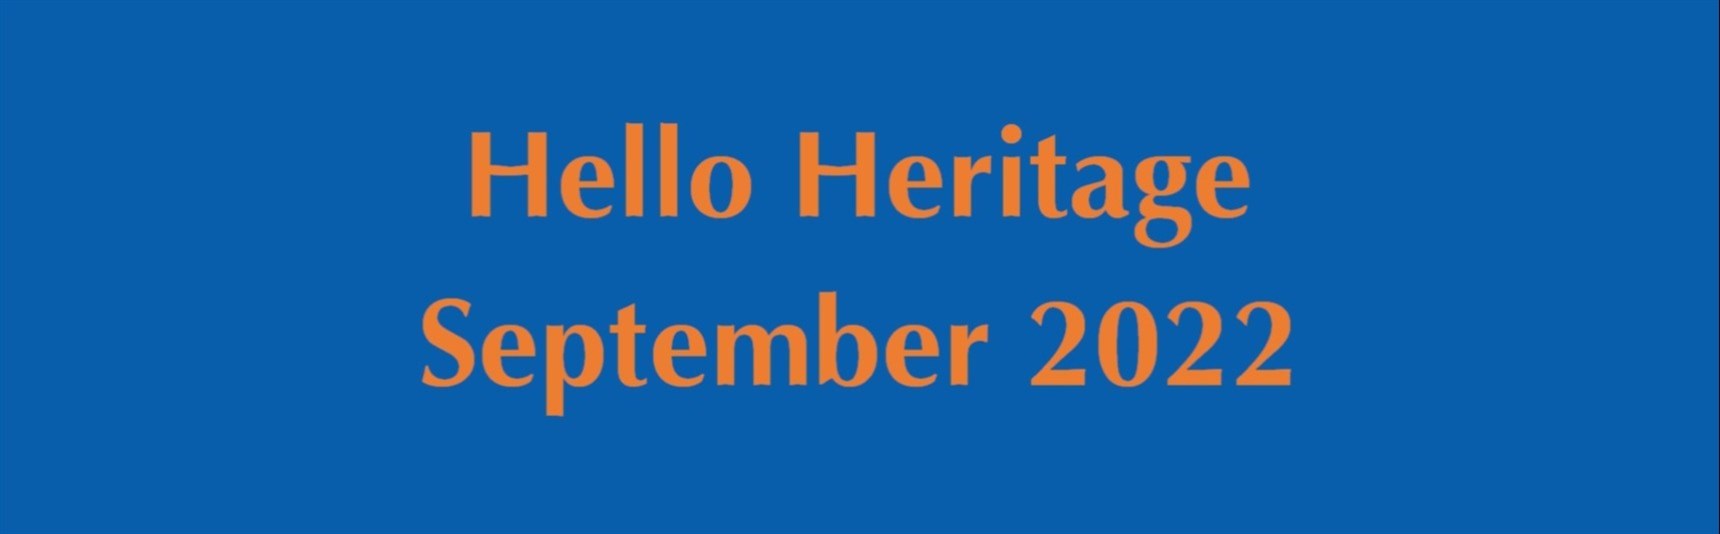 HelloHeritage-2022